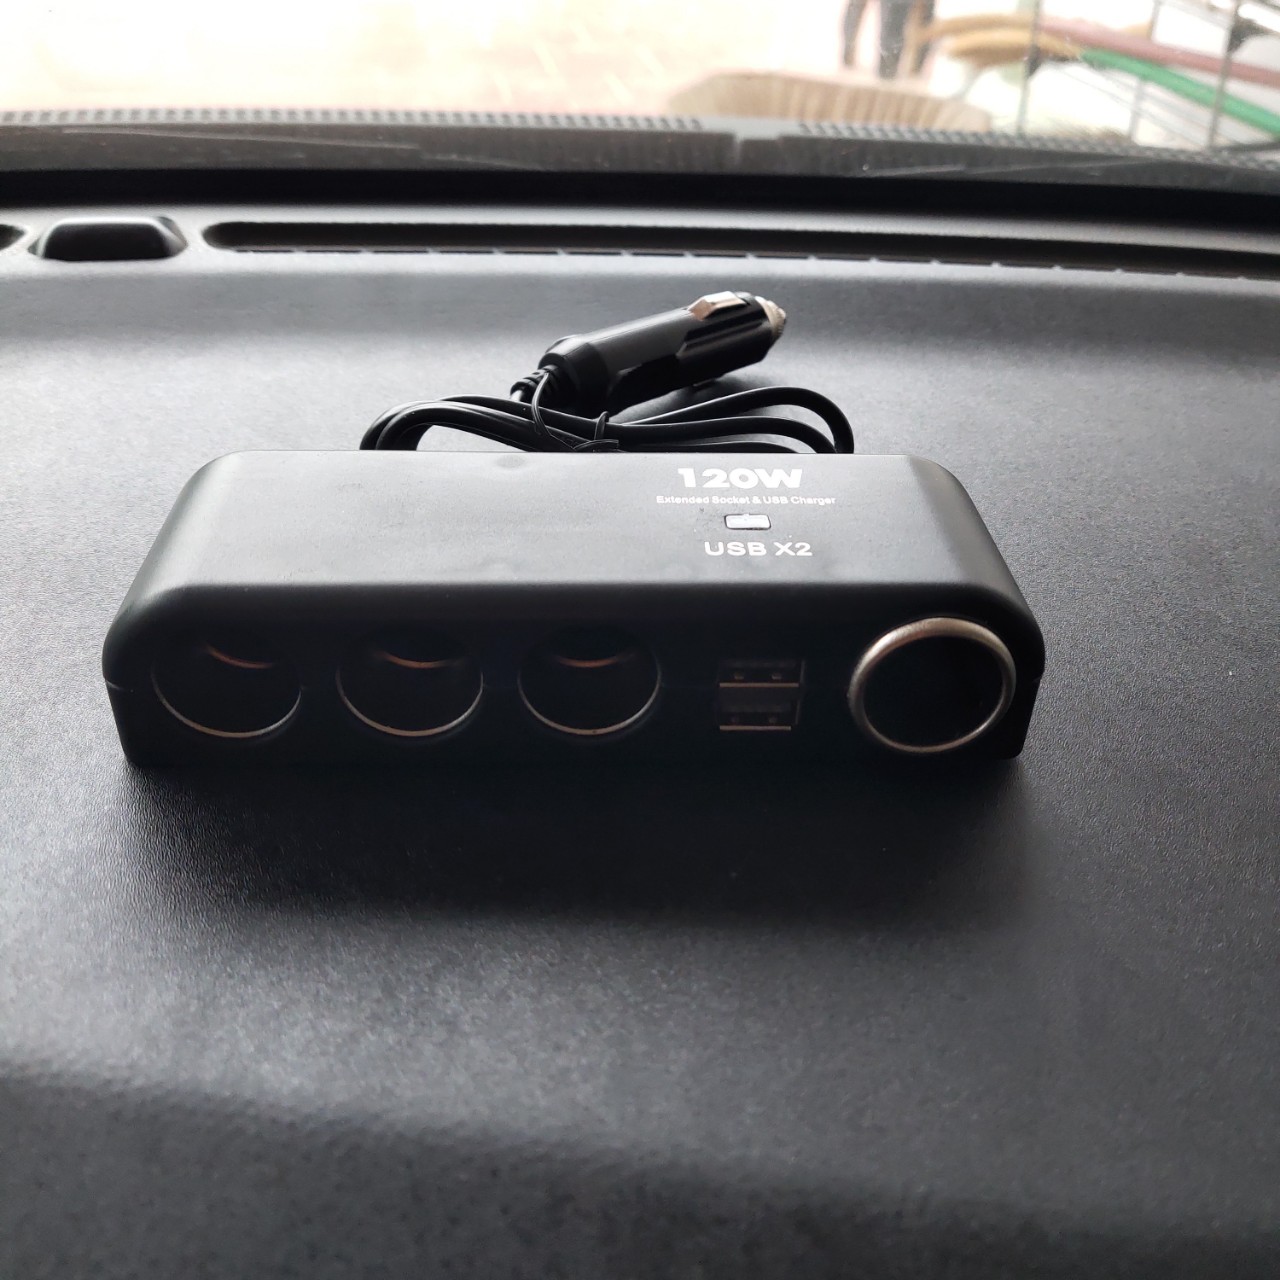 Bộ chia tẩu sạc ô tô xe hơi 12v-24v 4 cổng USB kép 120w mẫu mới loại tốt kèm 2 cầu chì dây chống cháy